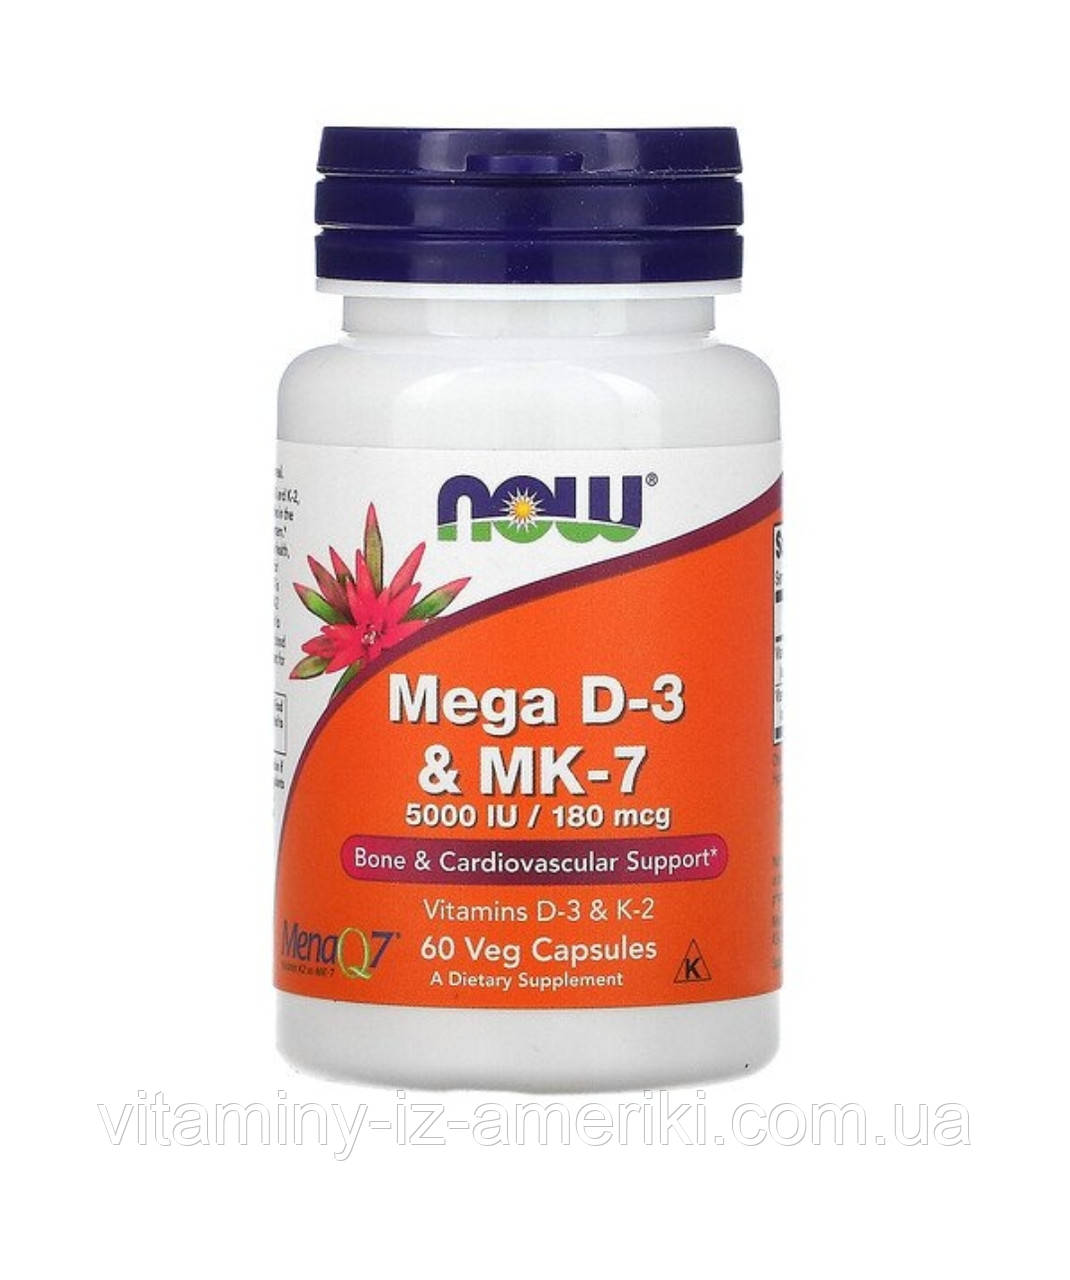 Вітаміни Д3 та К2 дорослим у рослинних капсулах, Mega D-3 & MK-7 (180 мкг/5000 МО), Now Foods, 60 капсул